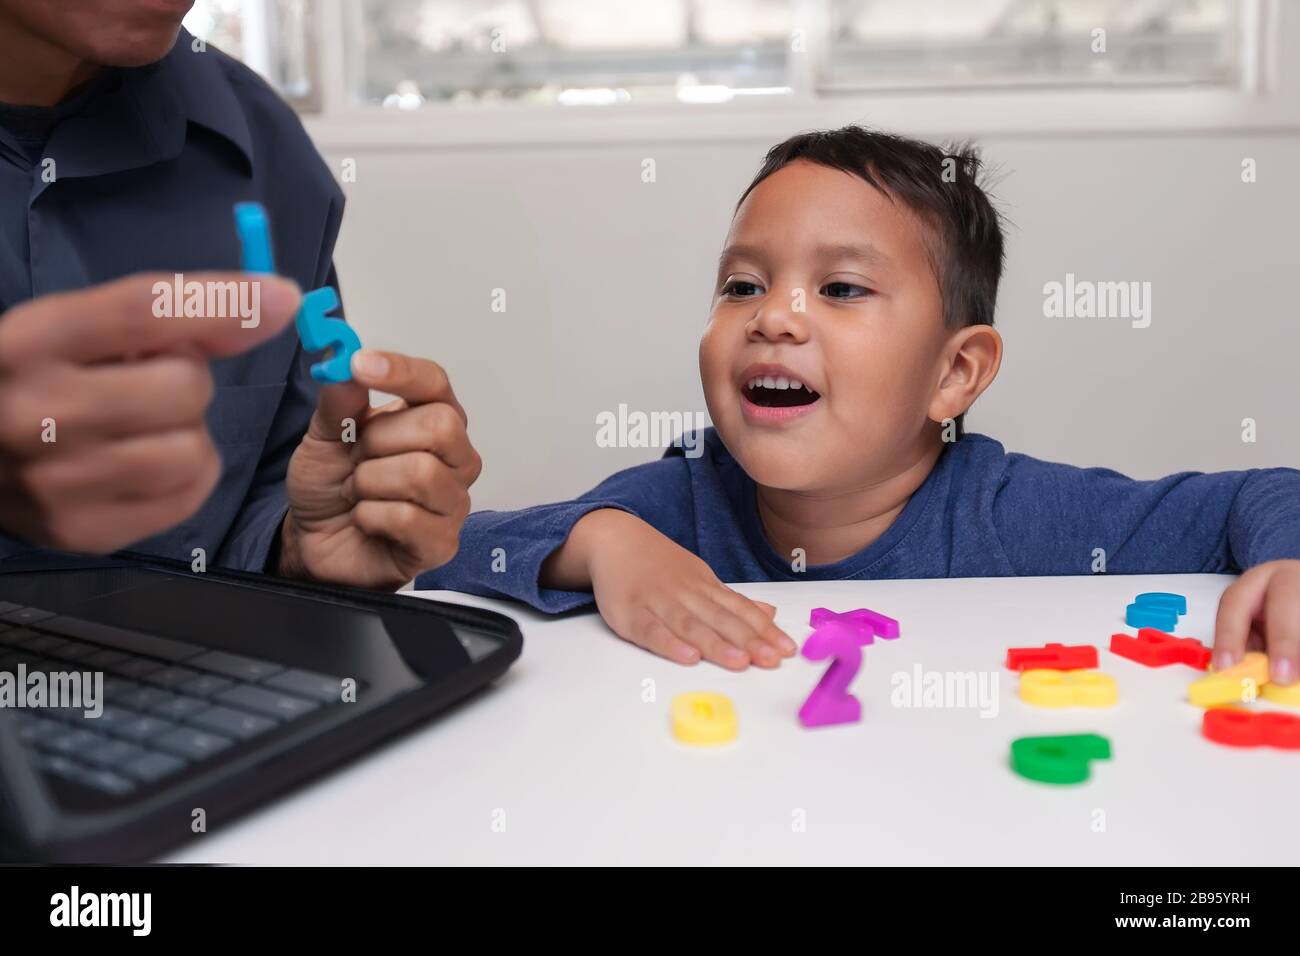 Estudio basado en el hogar con tutor enseñando a un niño pequeño cómo contar utilizando manipuladores de números y el niño hablando la respuesta correcta. Foto de stock